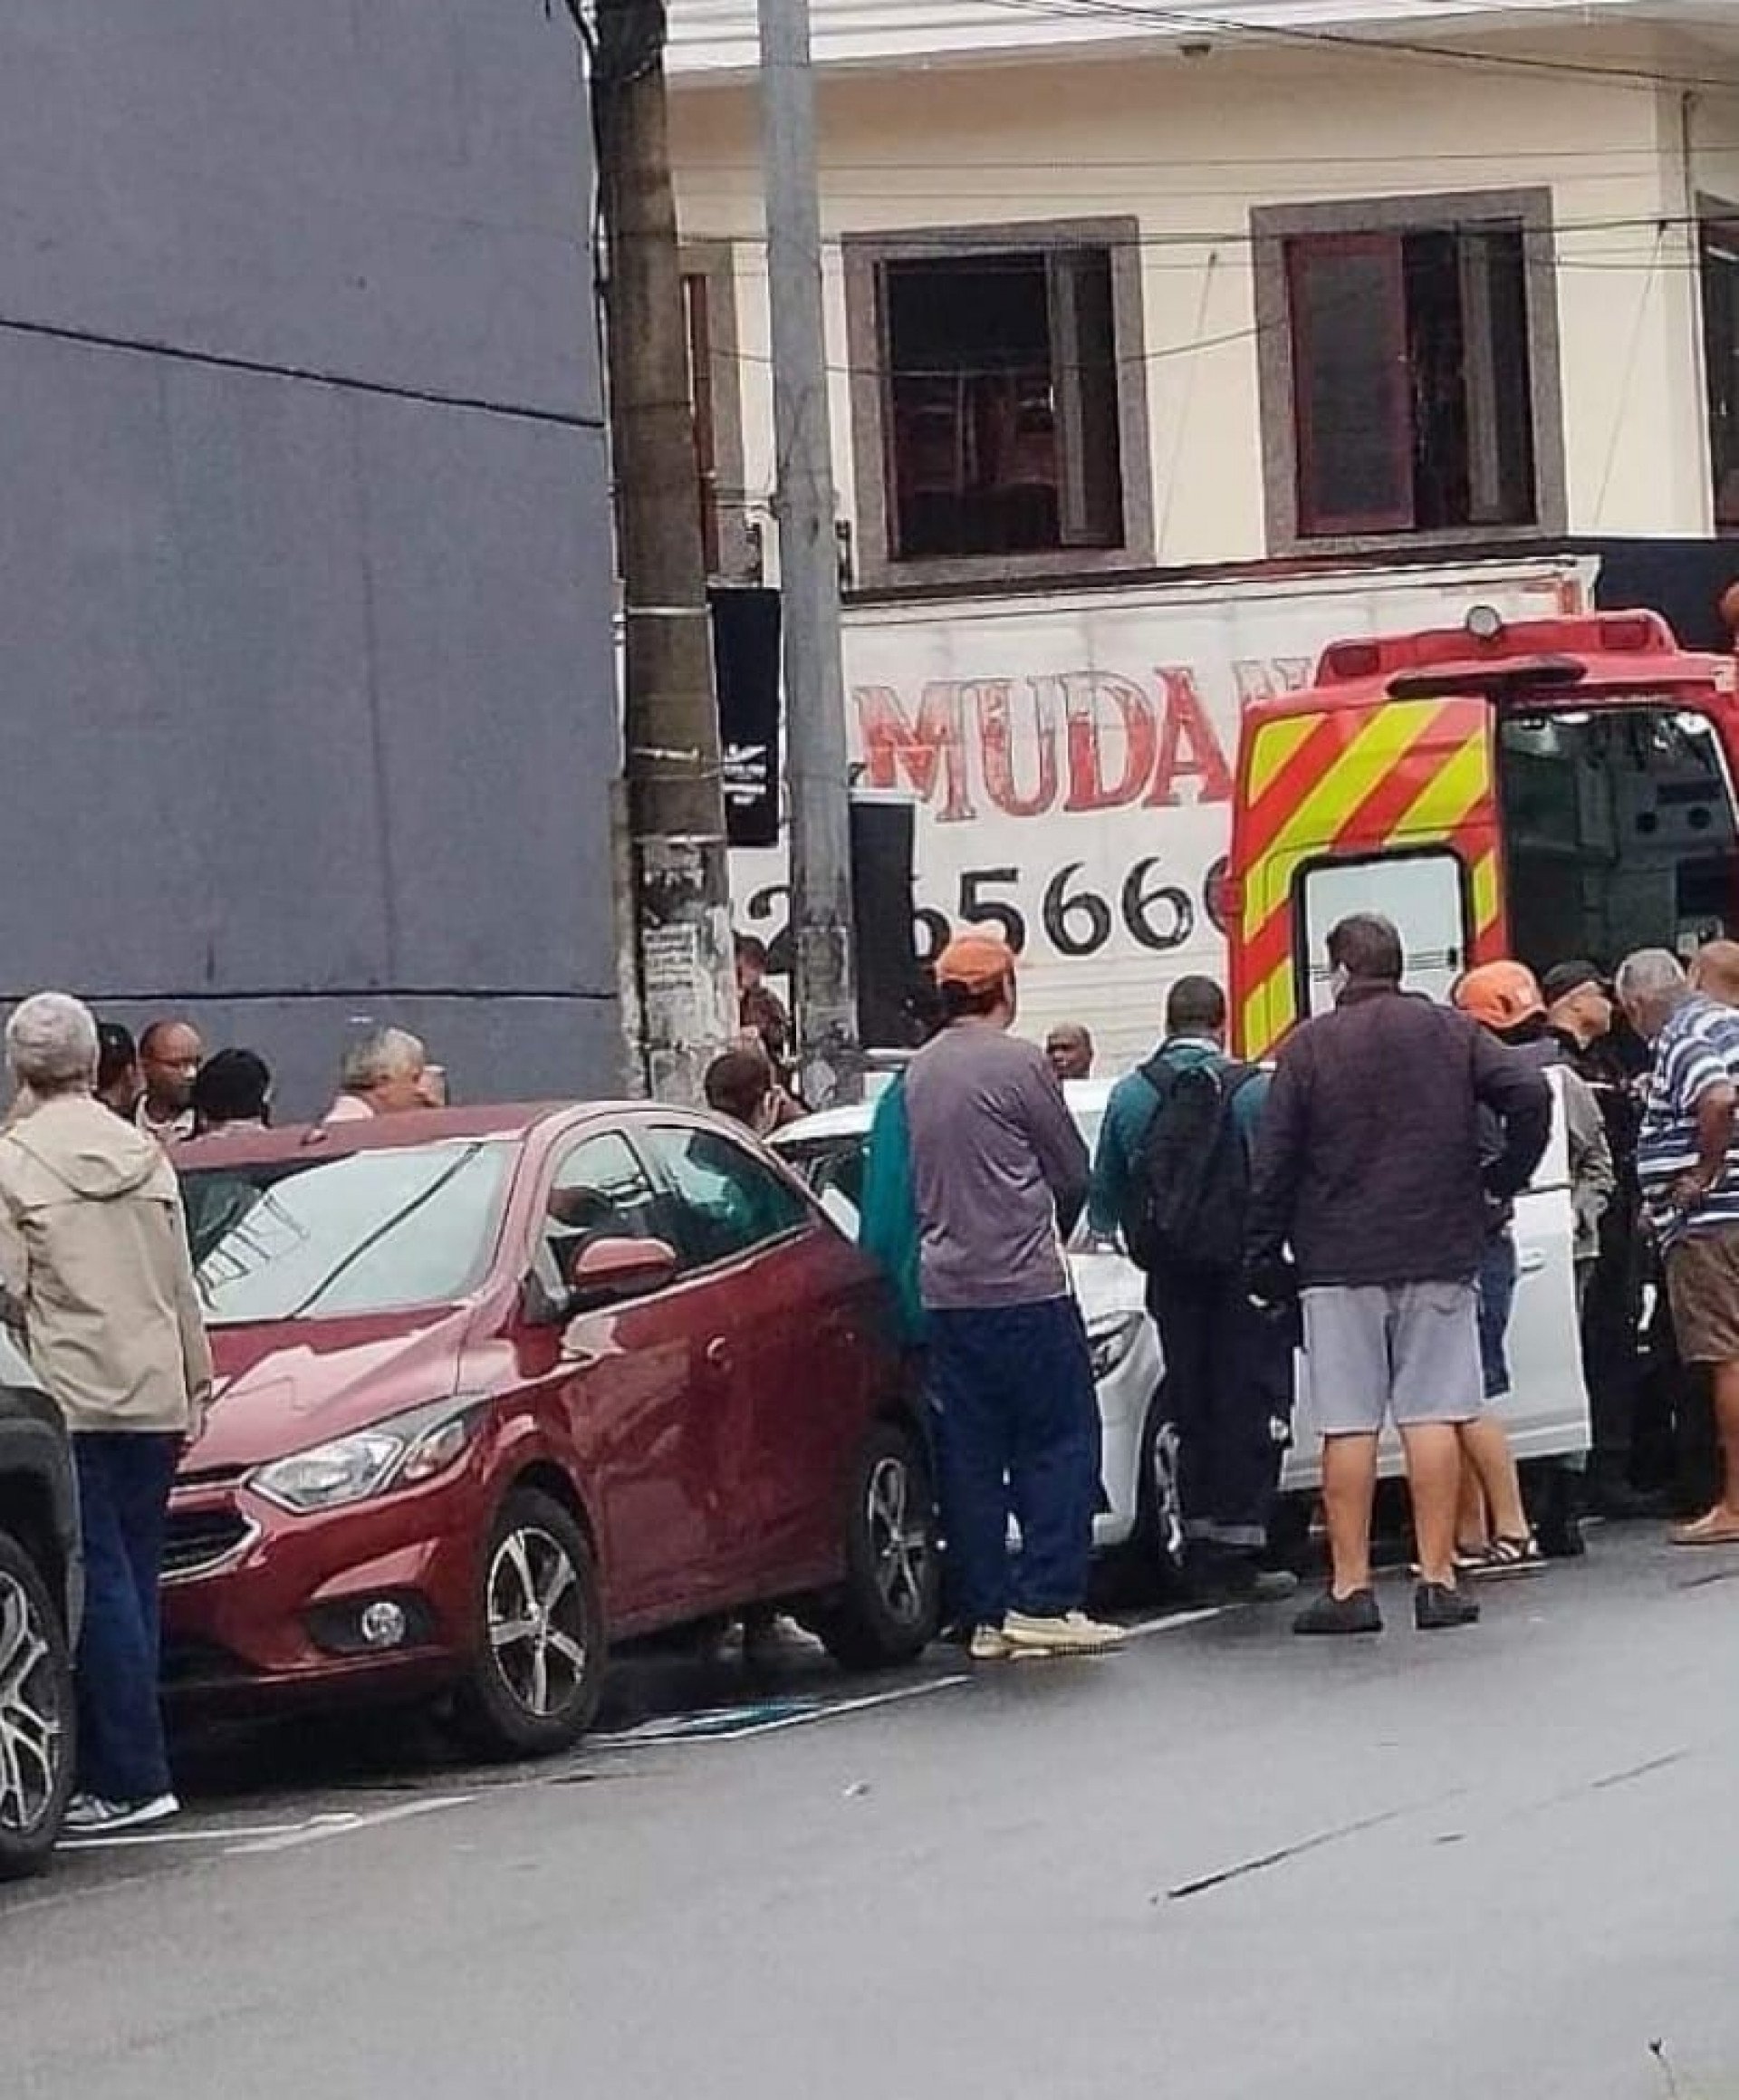 O corpo  de outro idoso estava dentro do carro no centro da cidade - Divulgação/Produção Rede Social